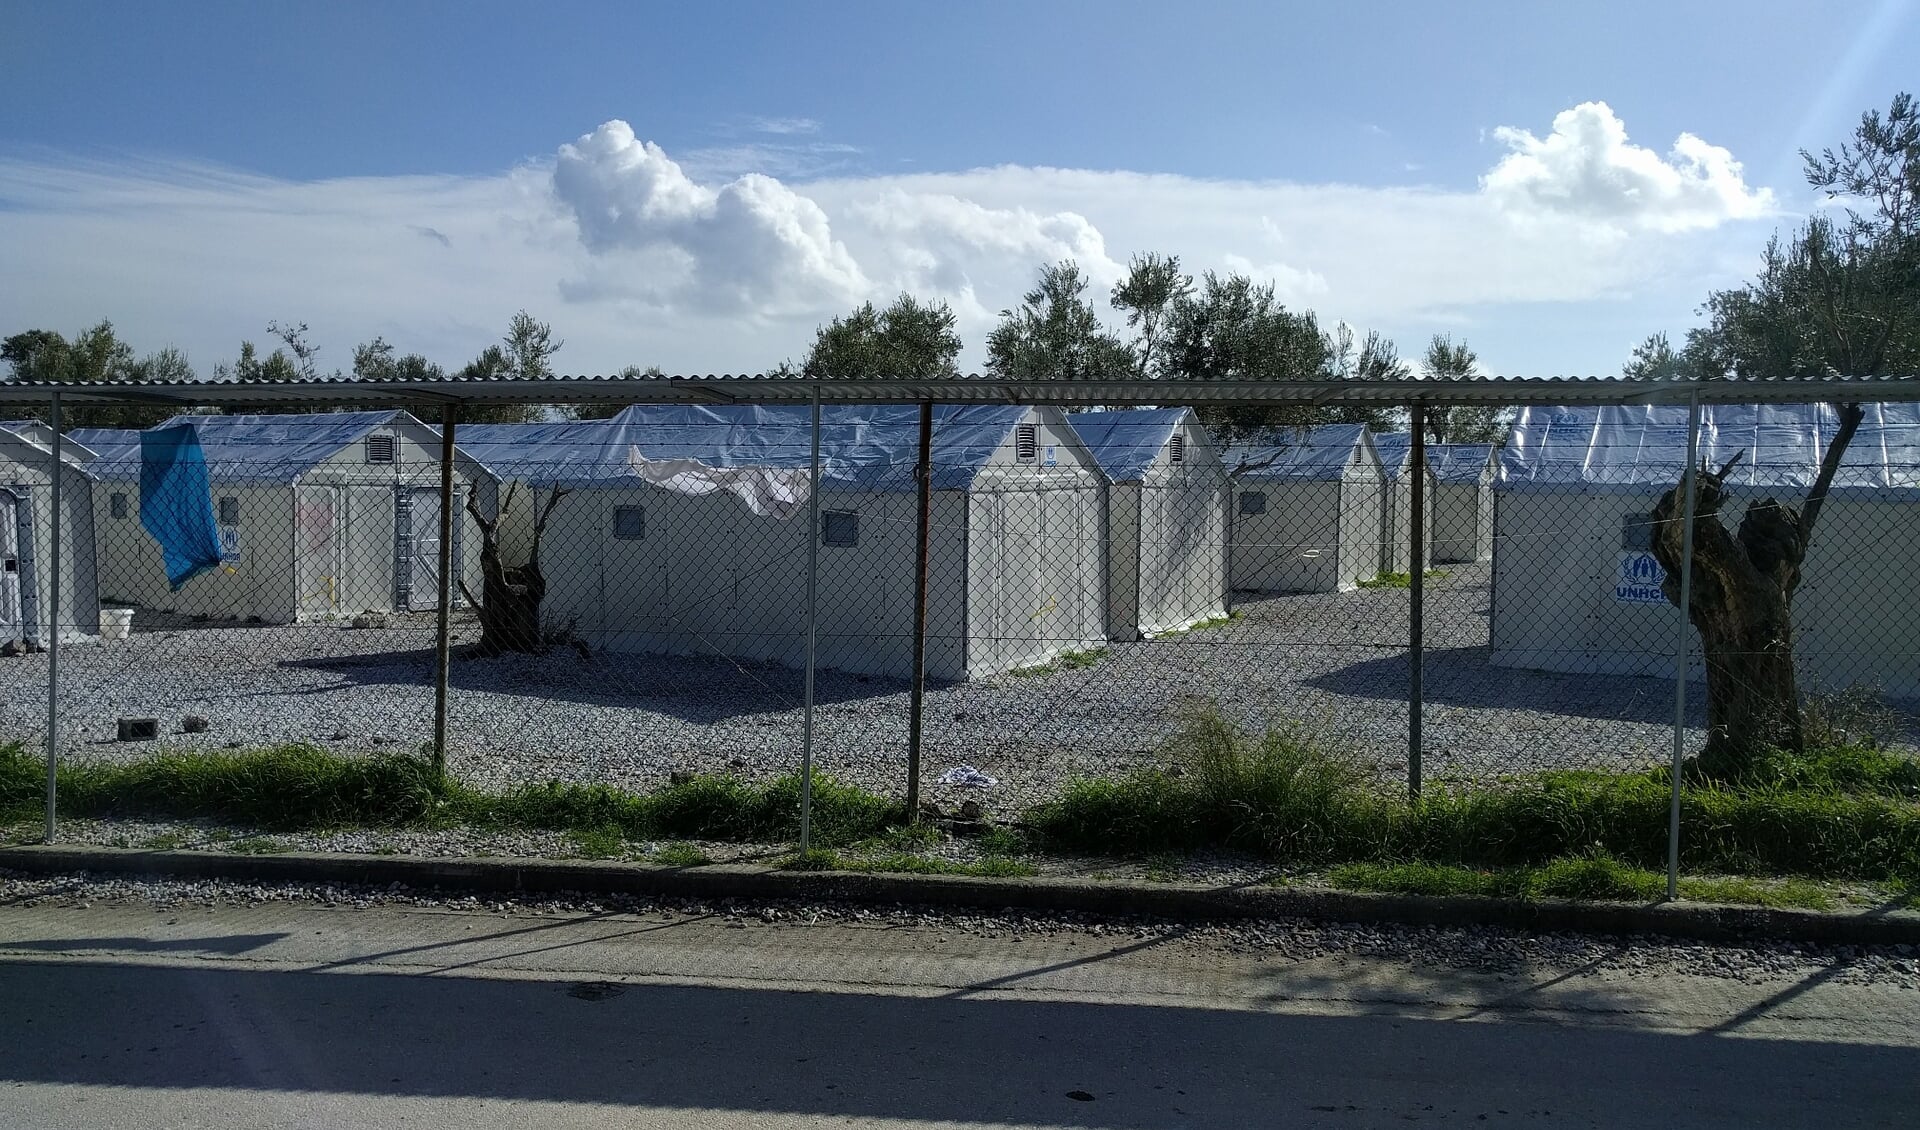 Op het Griekse eiland Lesbos zijn diverse vluchtelingenkampen gerealiseerd voor de opvang van met name Syriërs die hun land ontvlucht zijn.